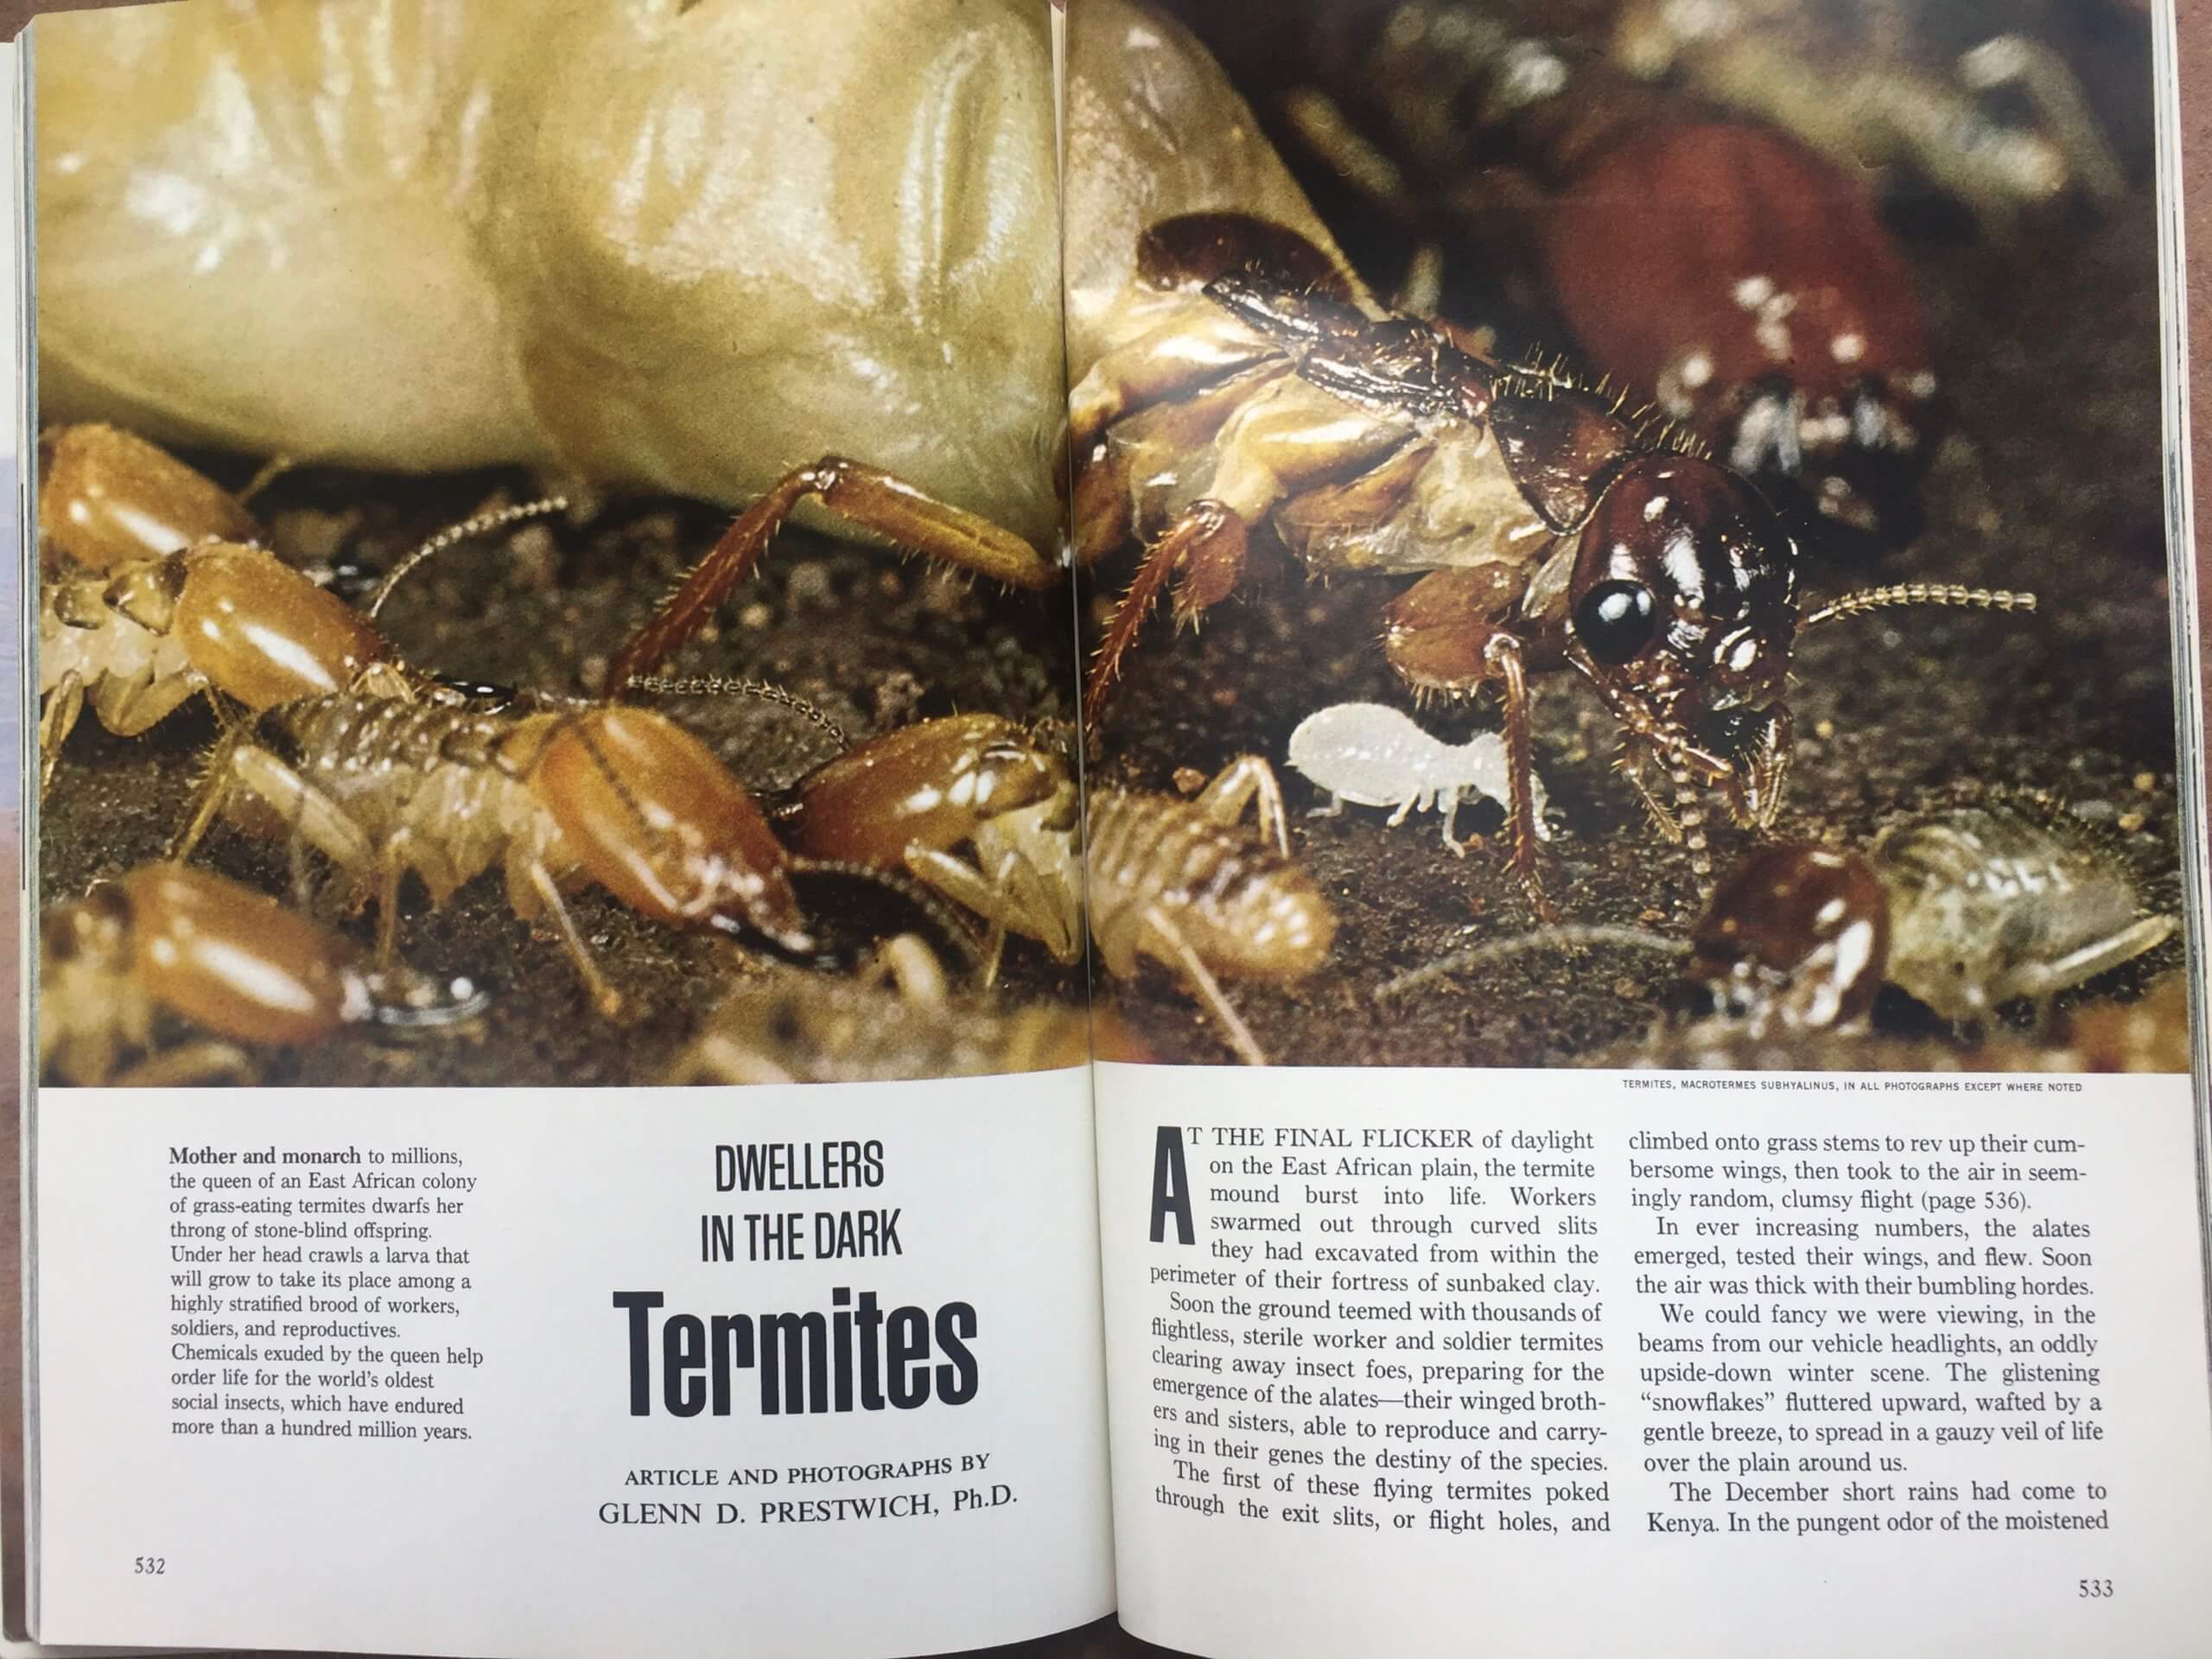 Dwellers in the Dark: Termites